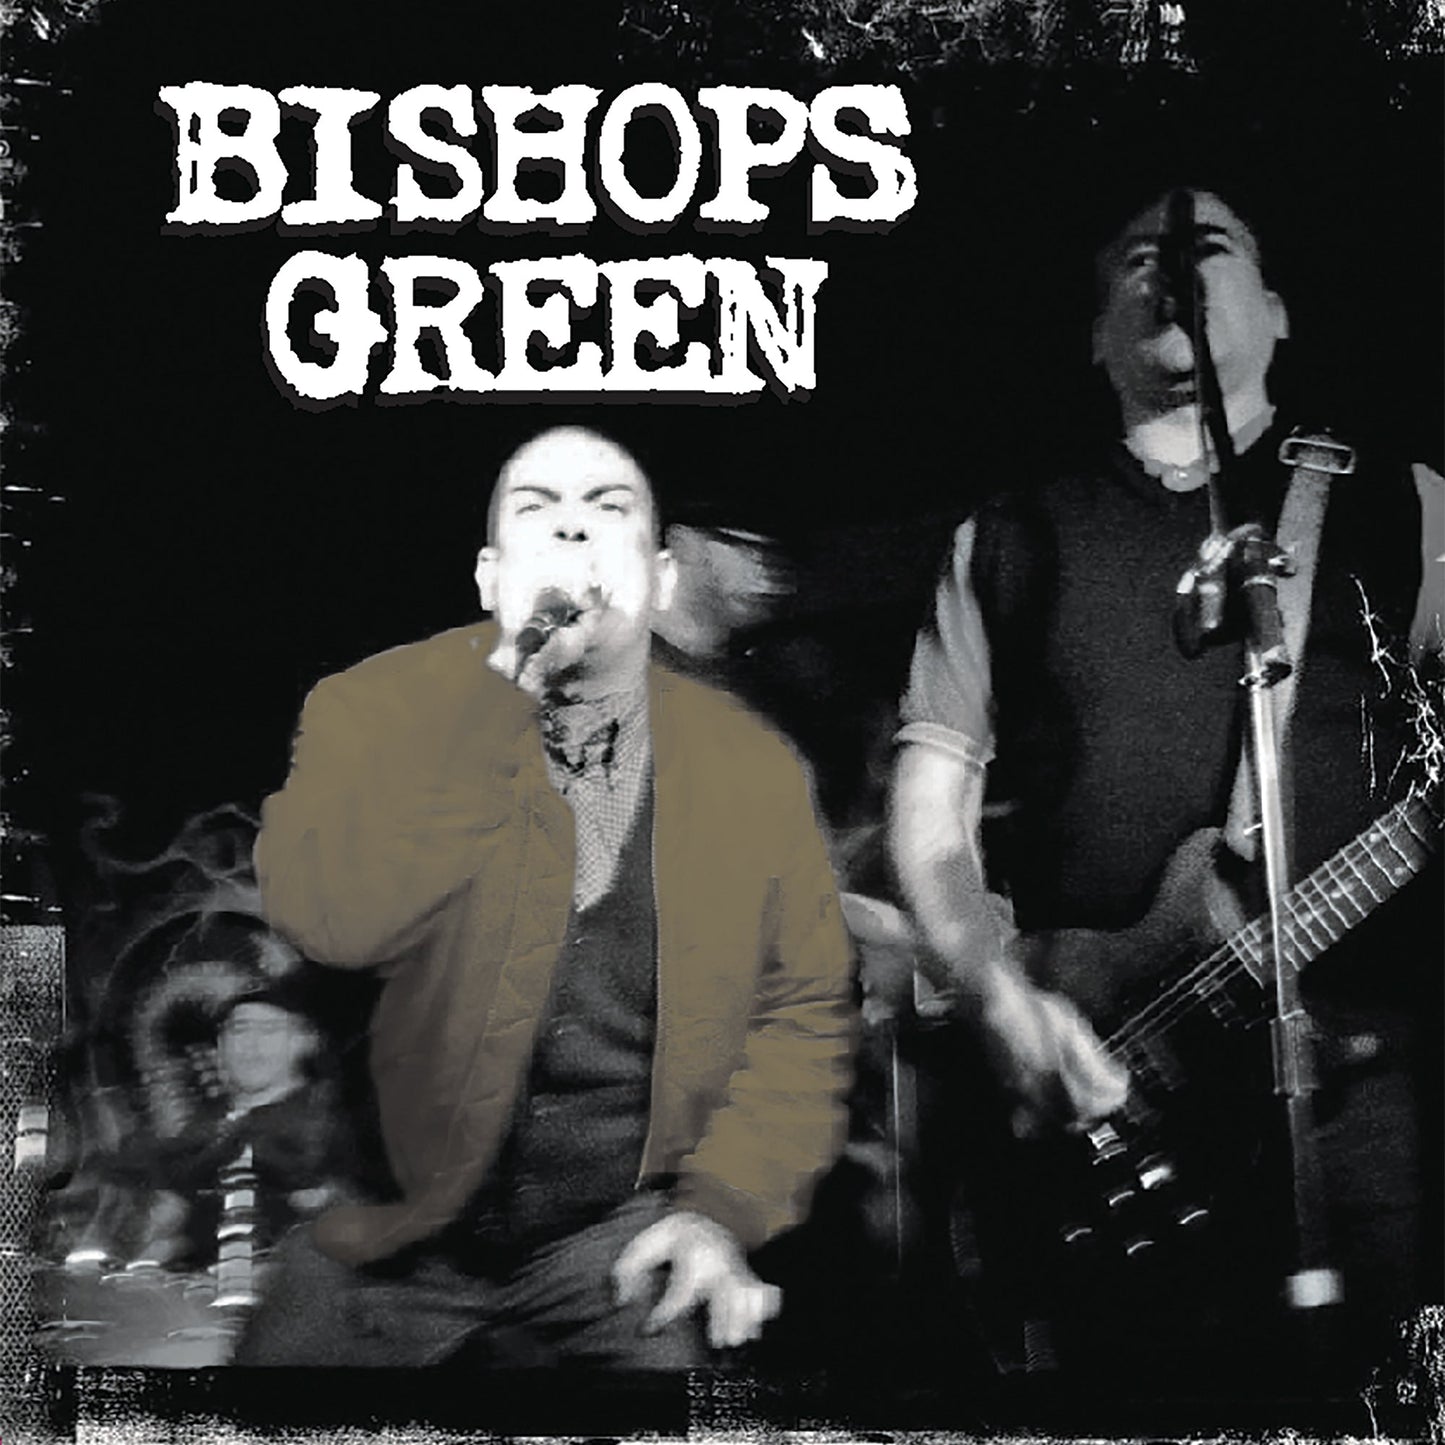 Bishops Green - "Bishops Green" LP